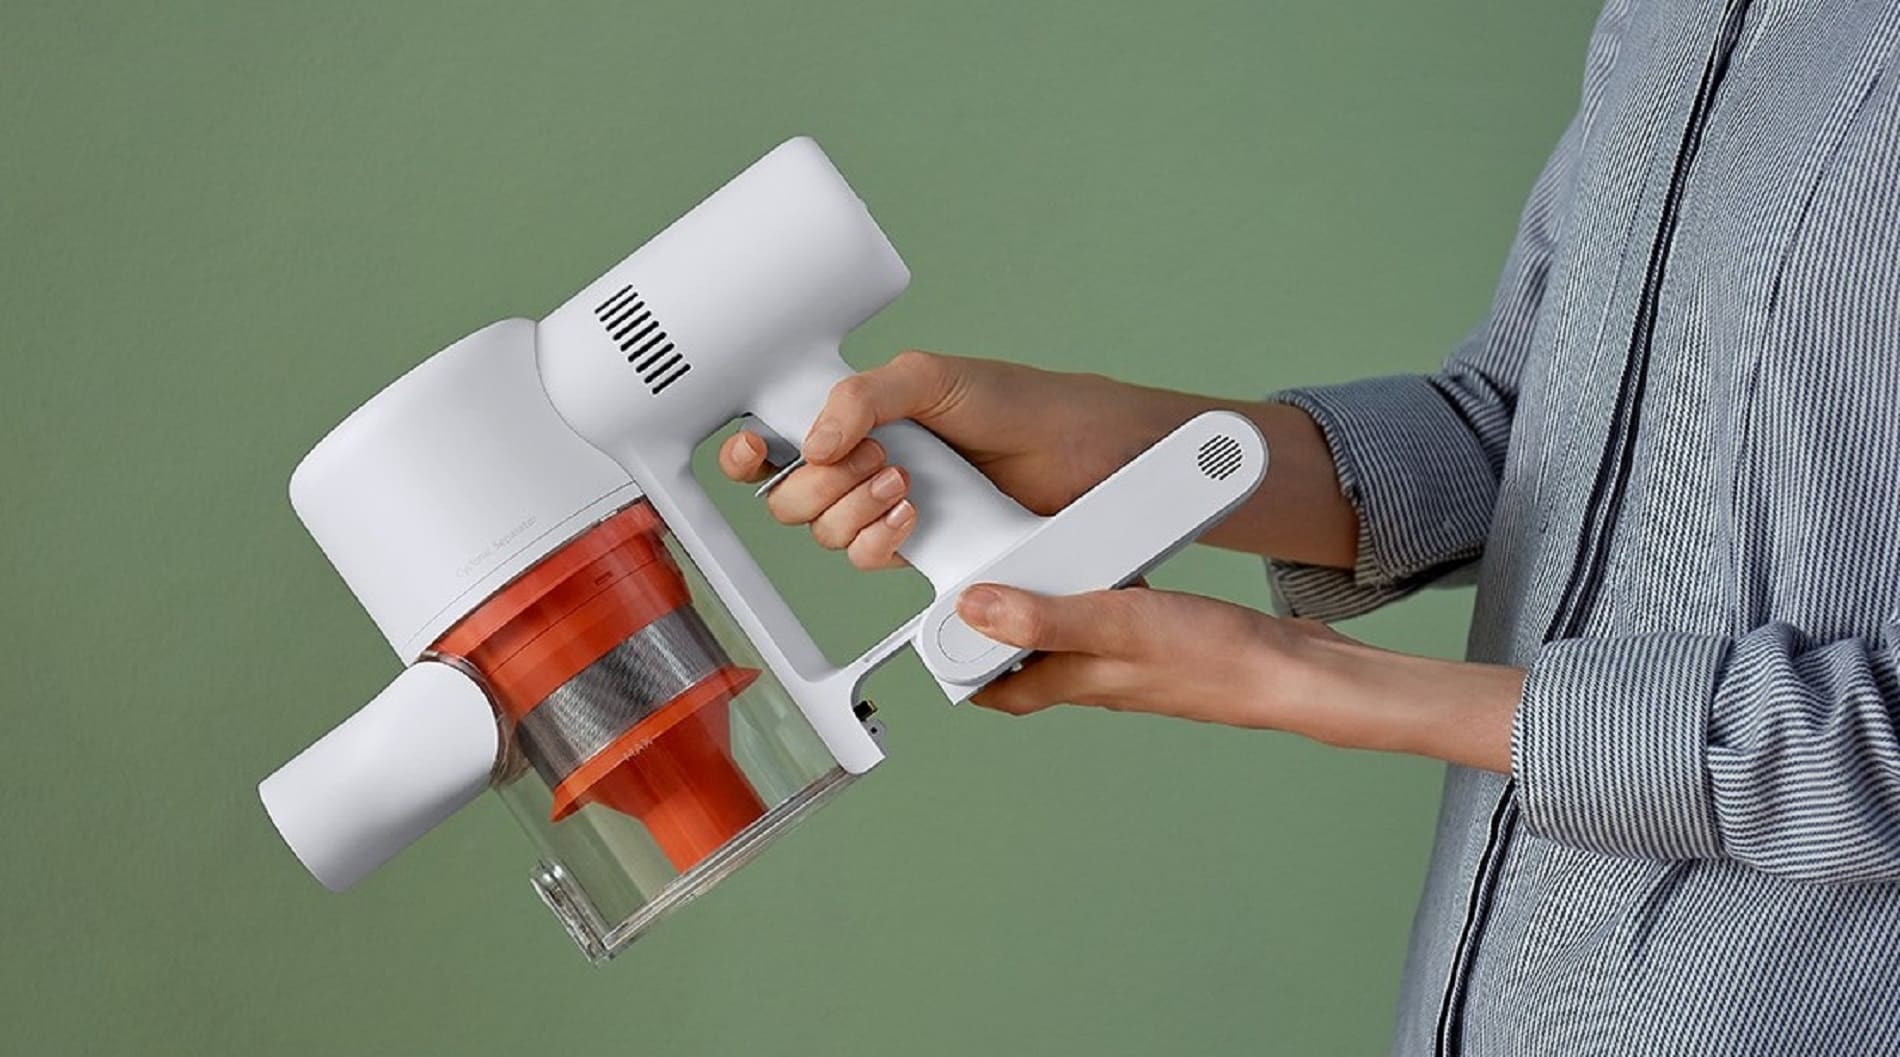 фото: Пресс-релиз: Высокое качество по честной цене: в продажу выходит беспроводной пылесос Mi Vacuum Cleaner G9 от Xiaomi 